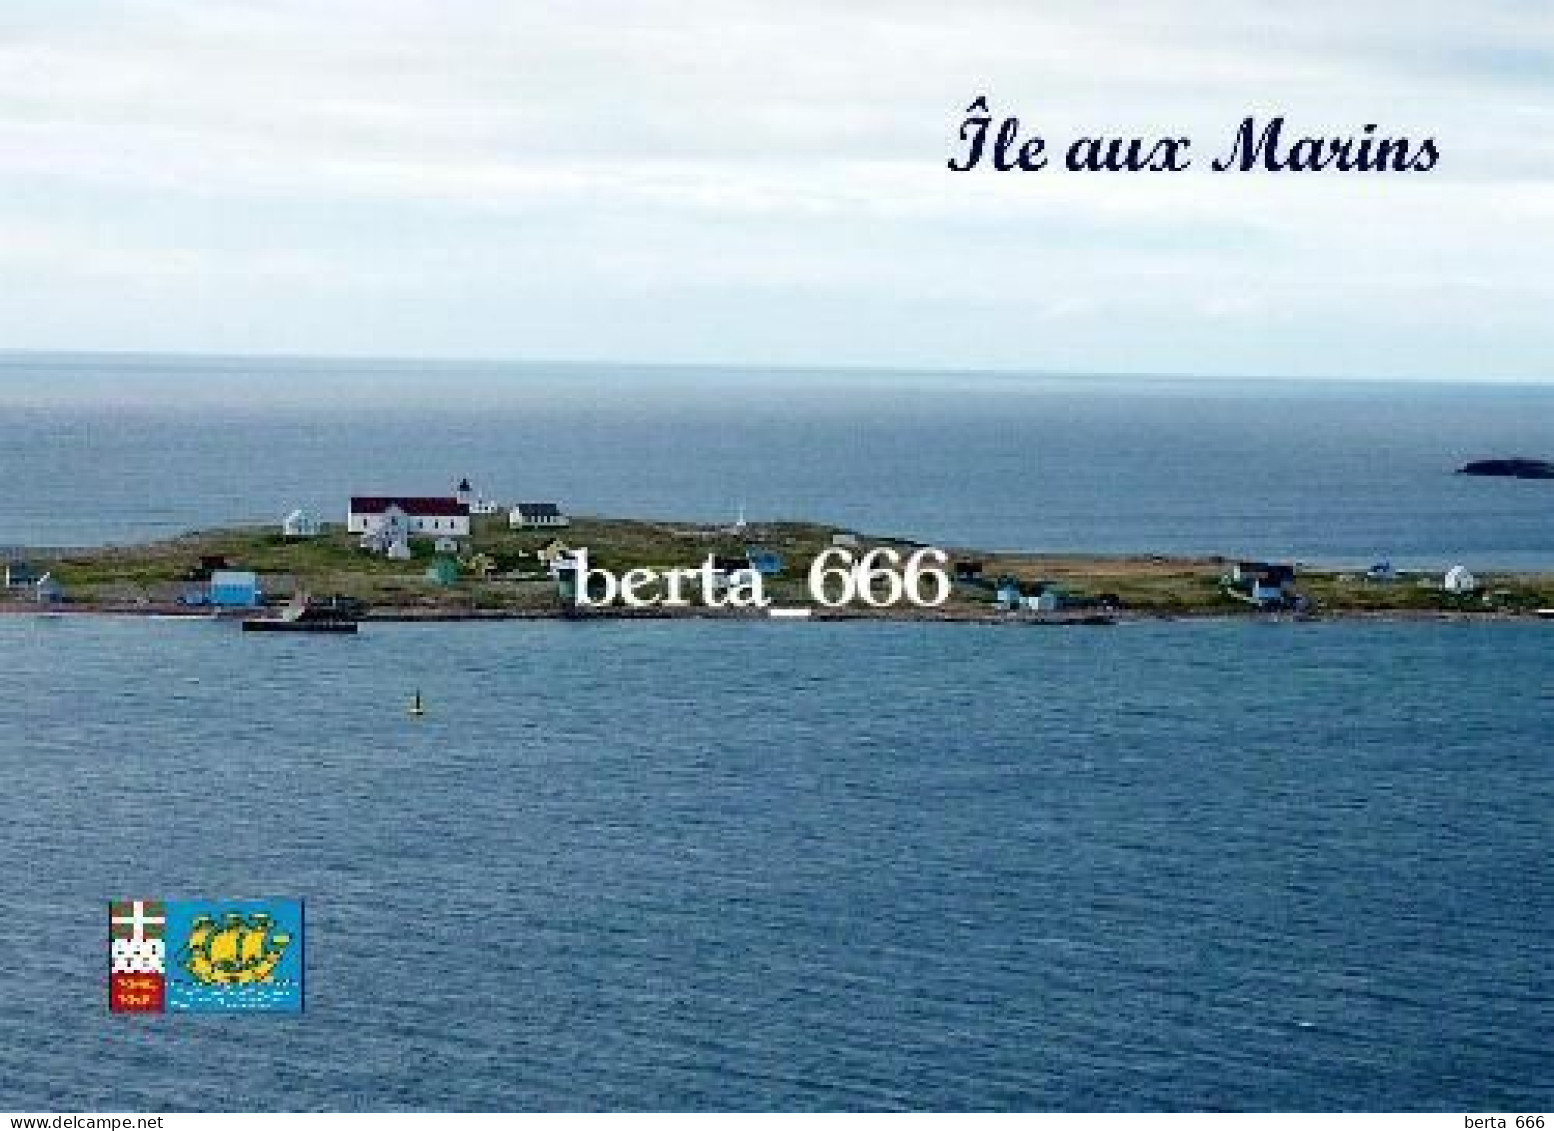 Saint Pierre And Miquelon Ile Aux Marins New Postcard - Saint Pierre And Miquelon